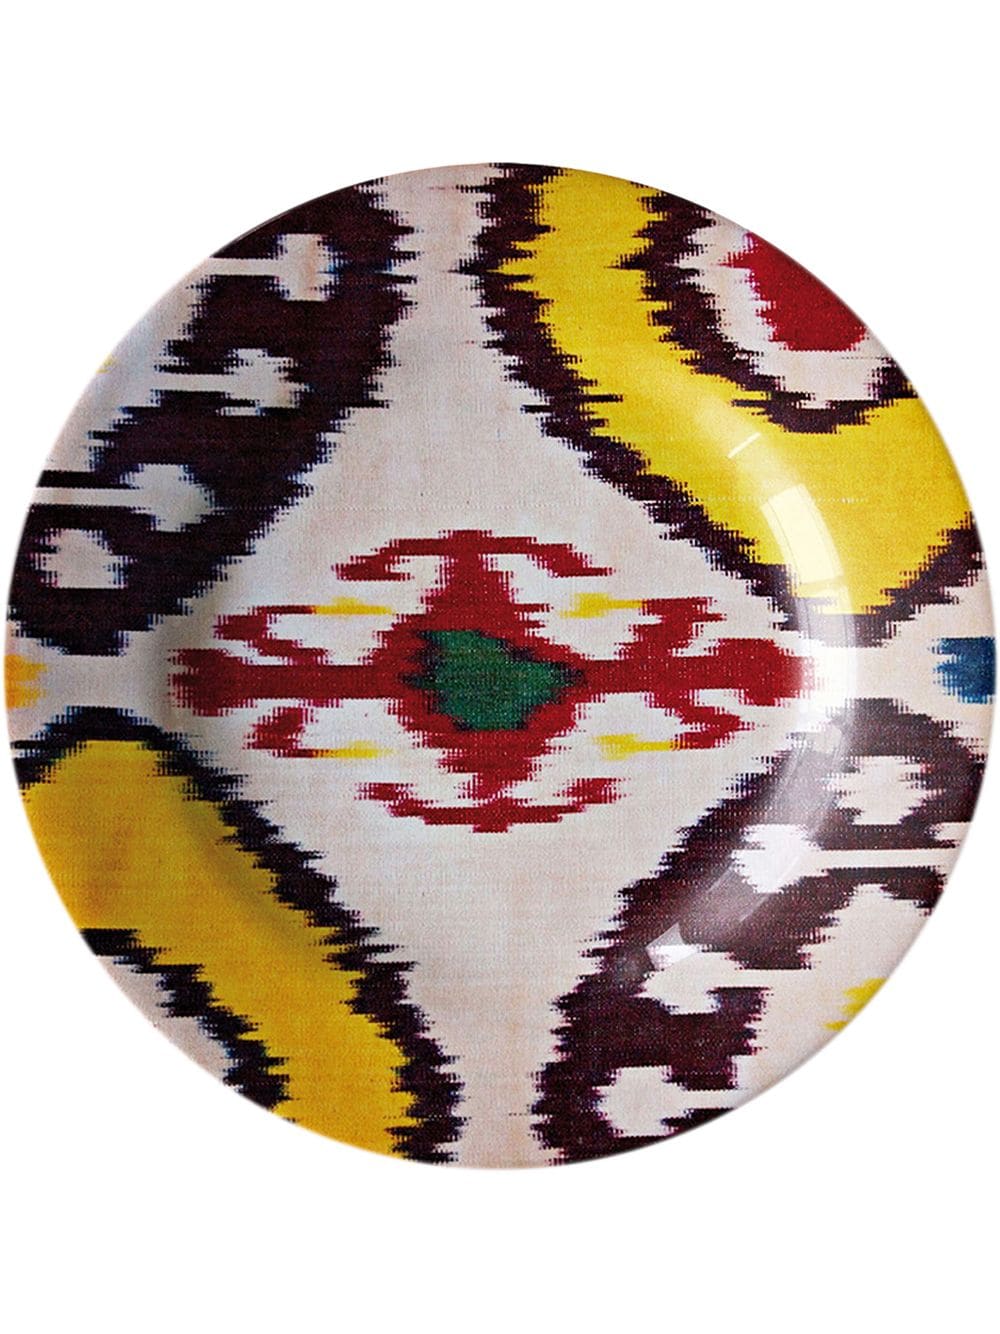 фото Les-ottomans керамическая тарелка с узором икат (19 см)